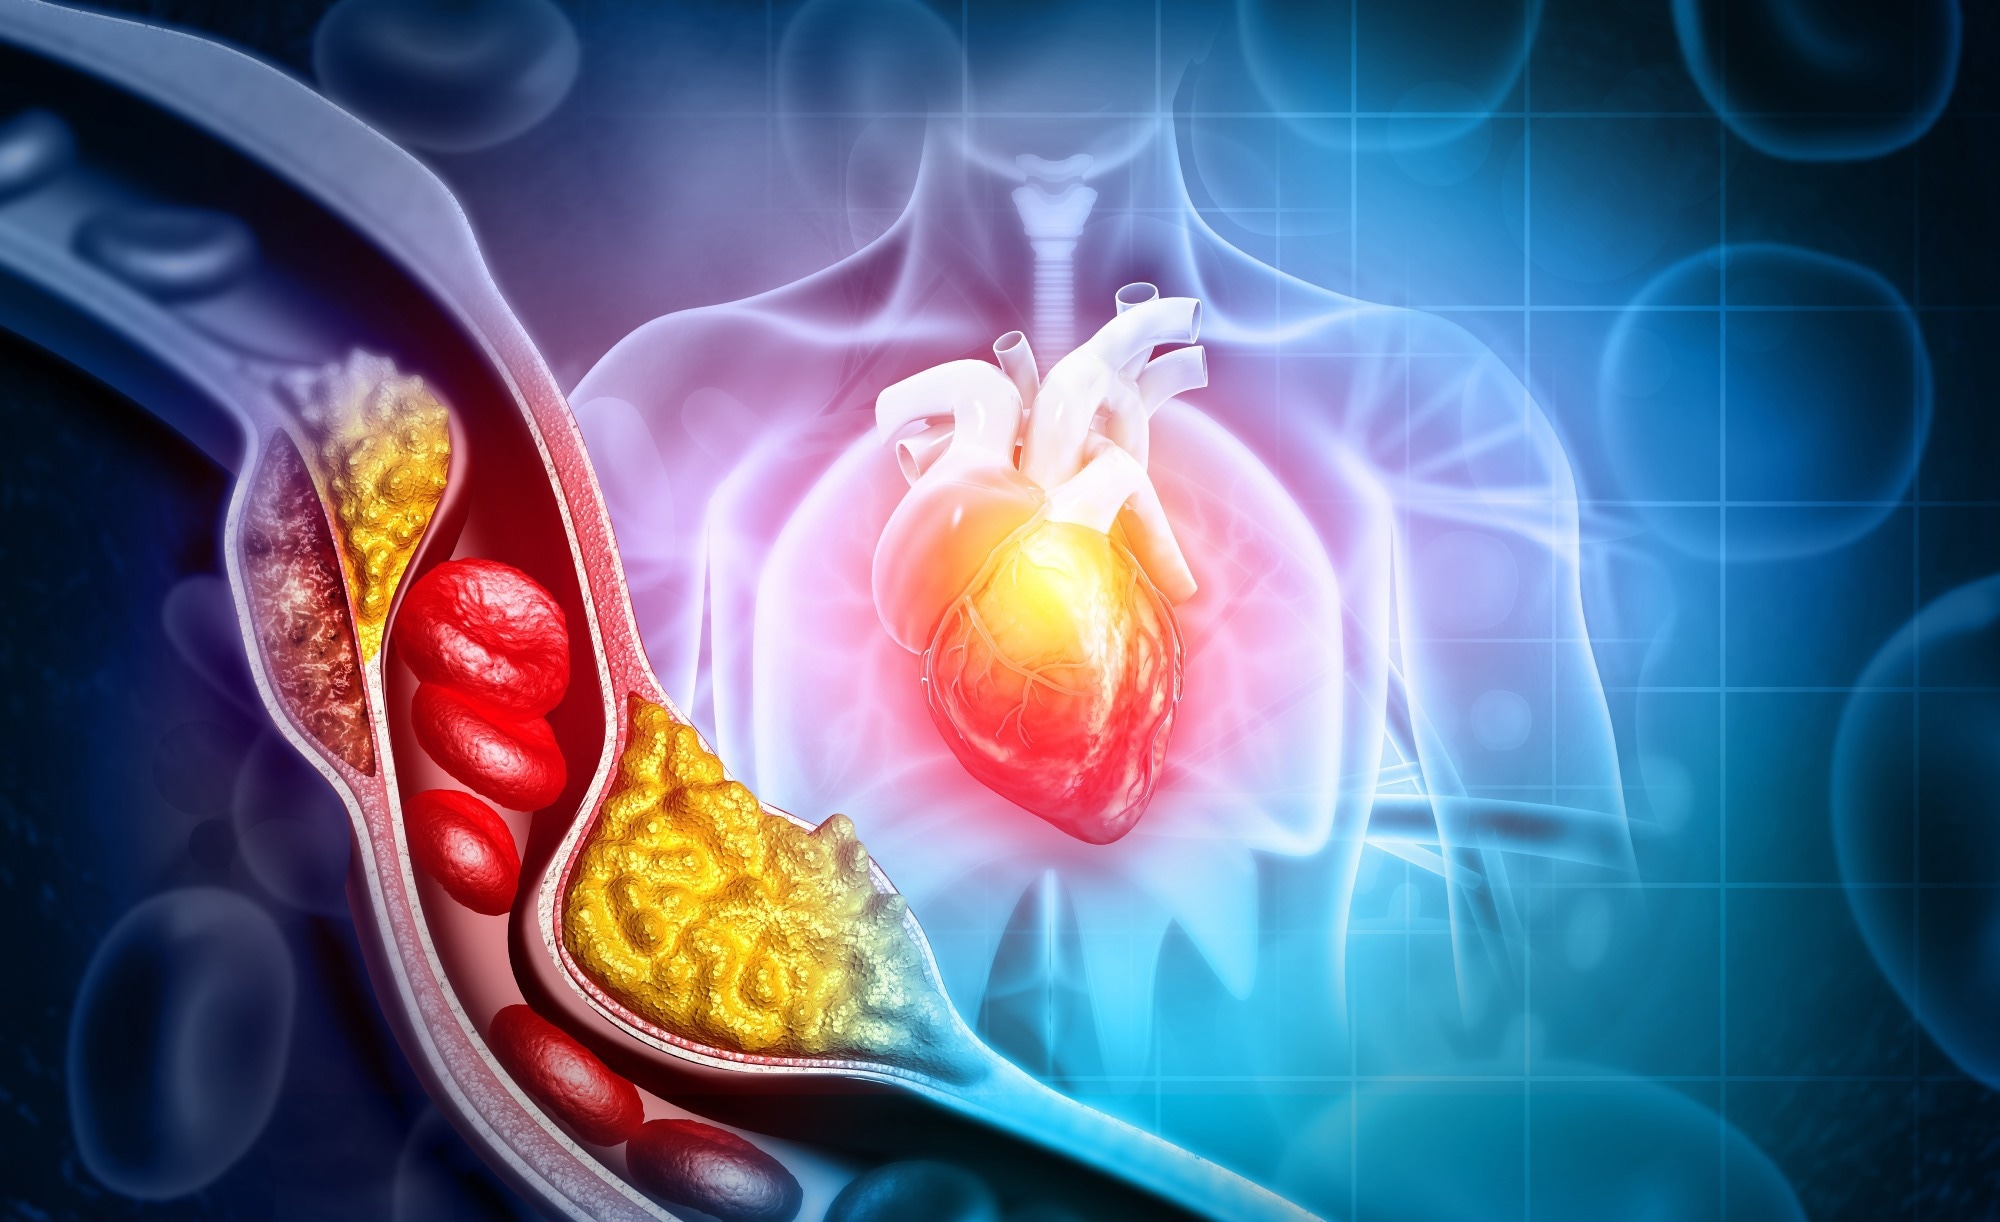 مطالعه: تغییرات در سطح کلسترول تام و خطر بیماری قلبی عروقی در بیماران دیابت نوع 2.  اعتبار تصویر: نور کریستال / Shutterstock